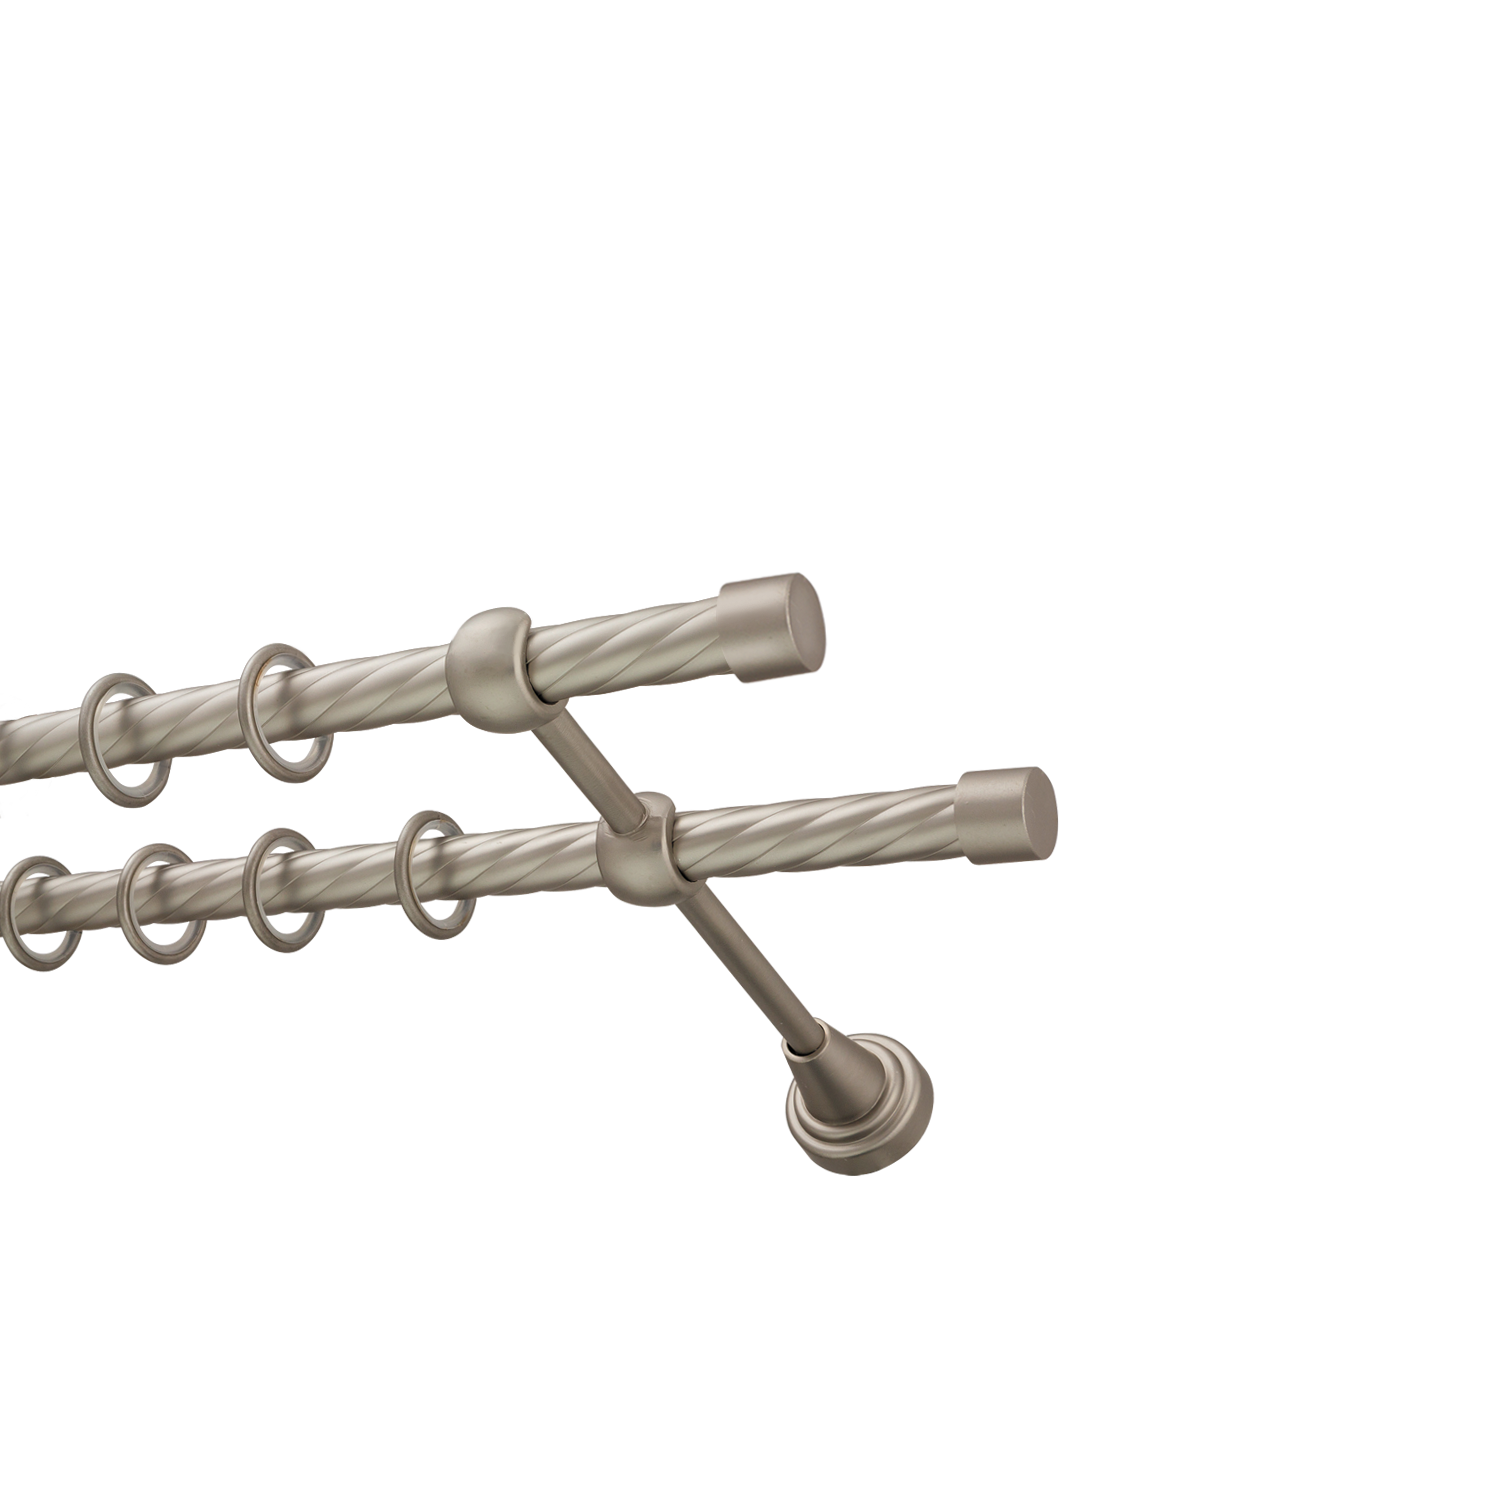 Металлический карниз для штор Заглушка, двухрядный 16/16 мм, сталь, витая штанга, длина 300 см - фото Wikidecor.ru